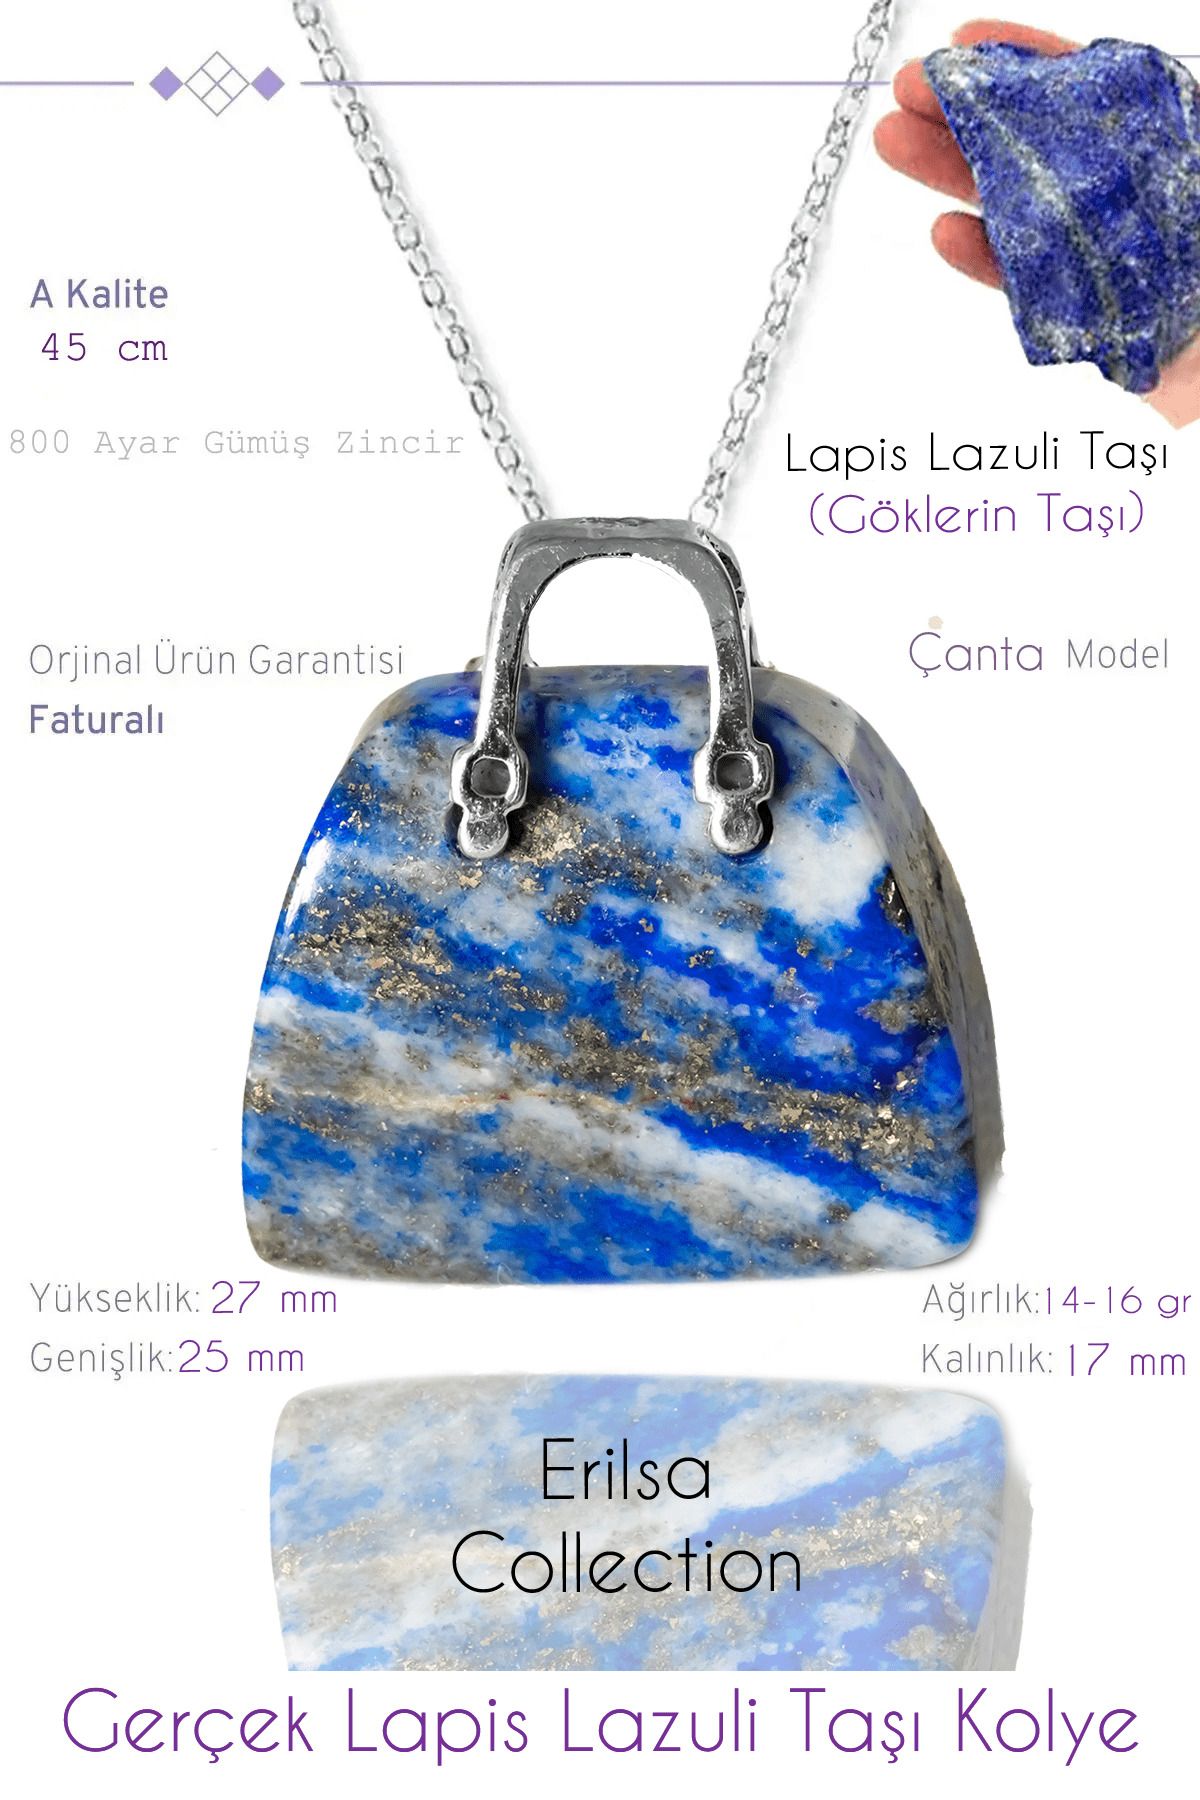 Tesbih Atölyesi Sertifikalı Çanta Model Lapis Lazuli Taşı Kolye